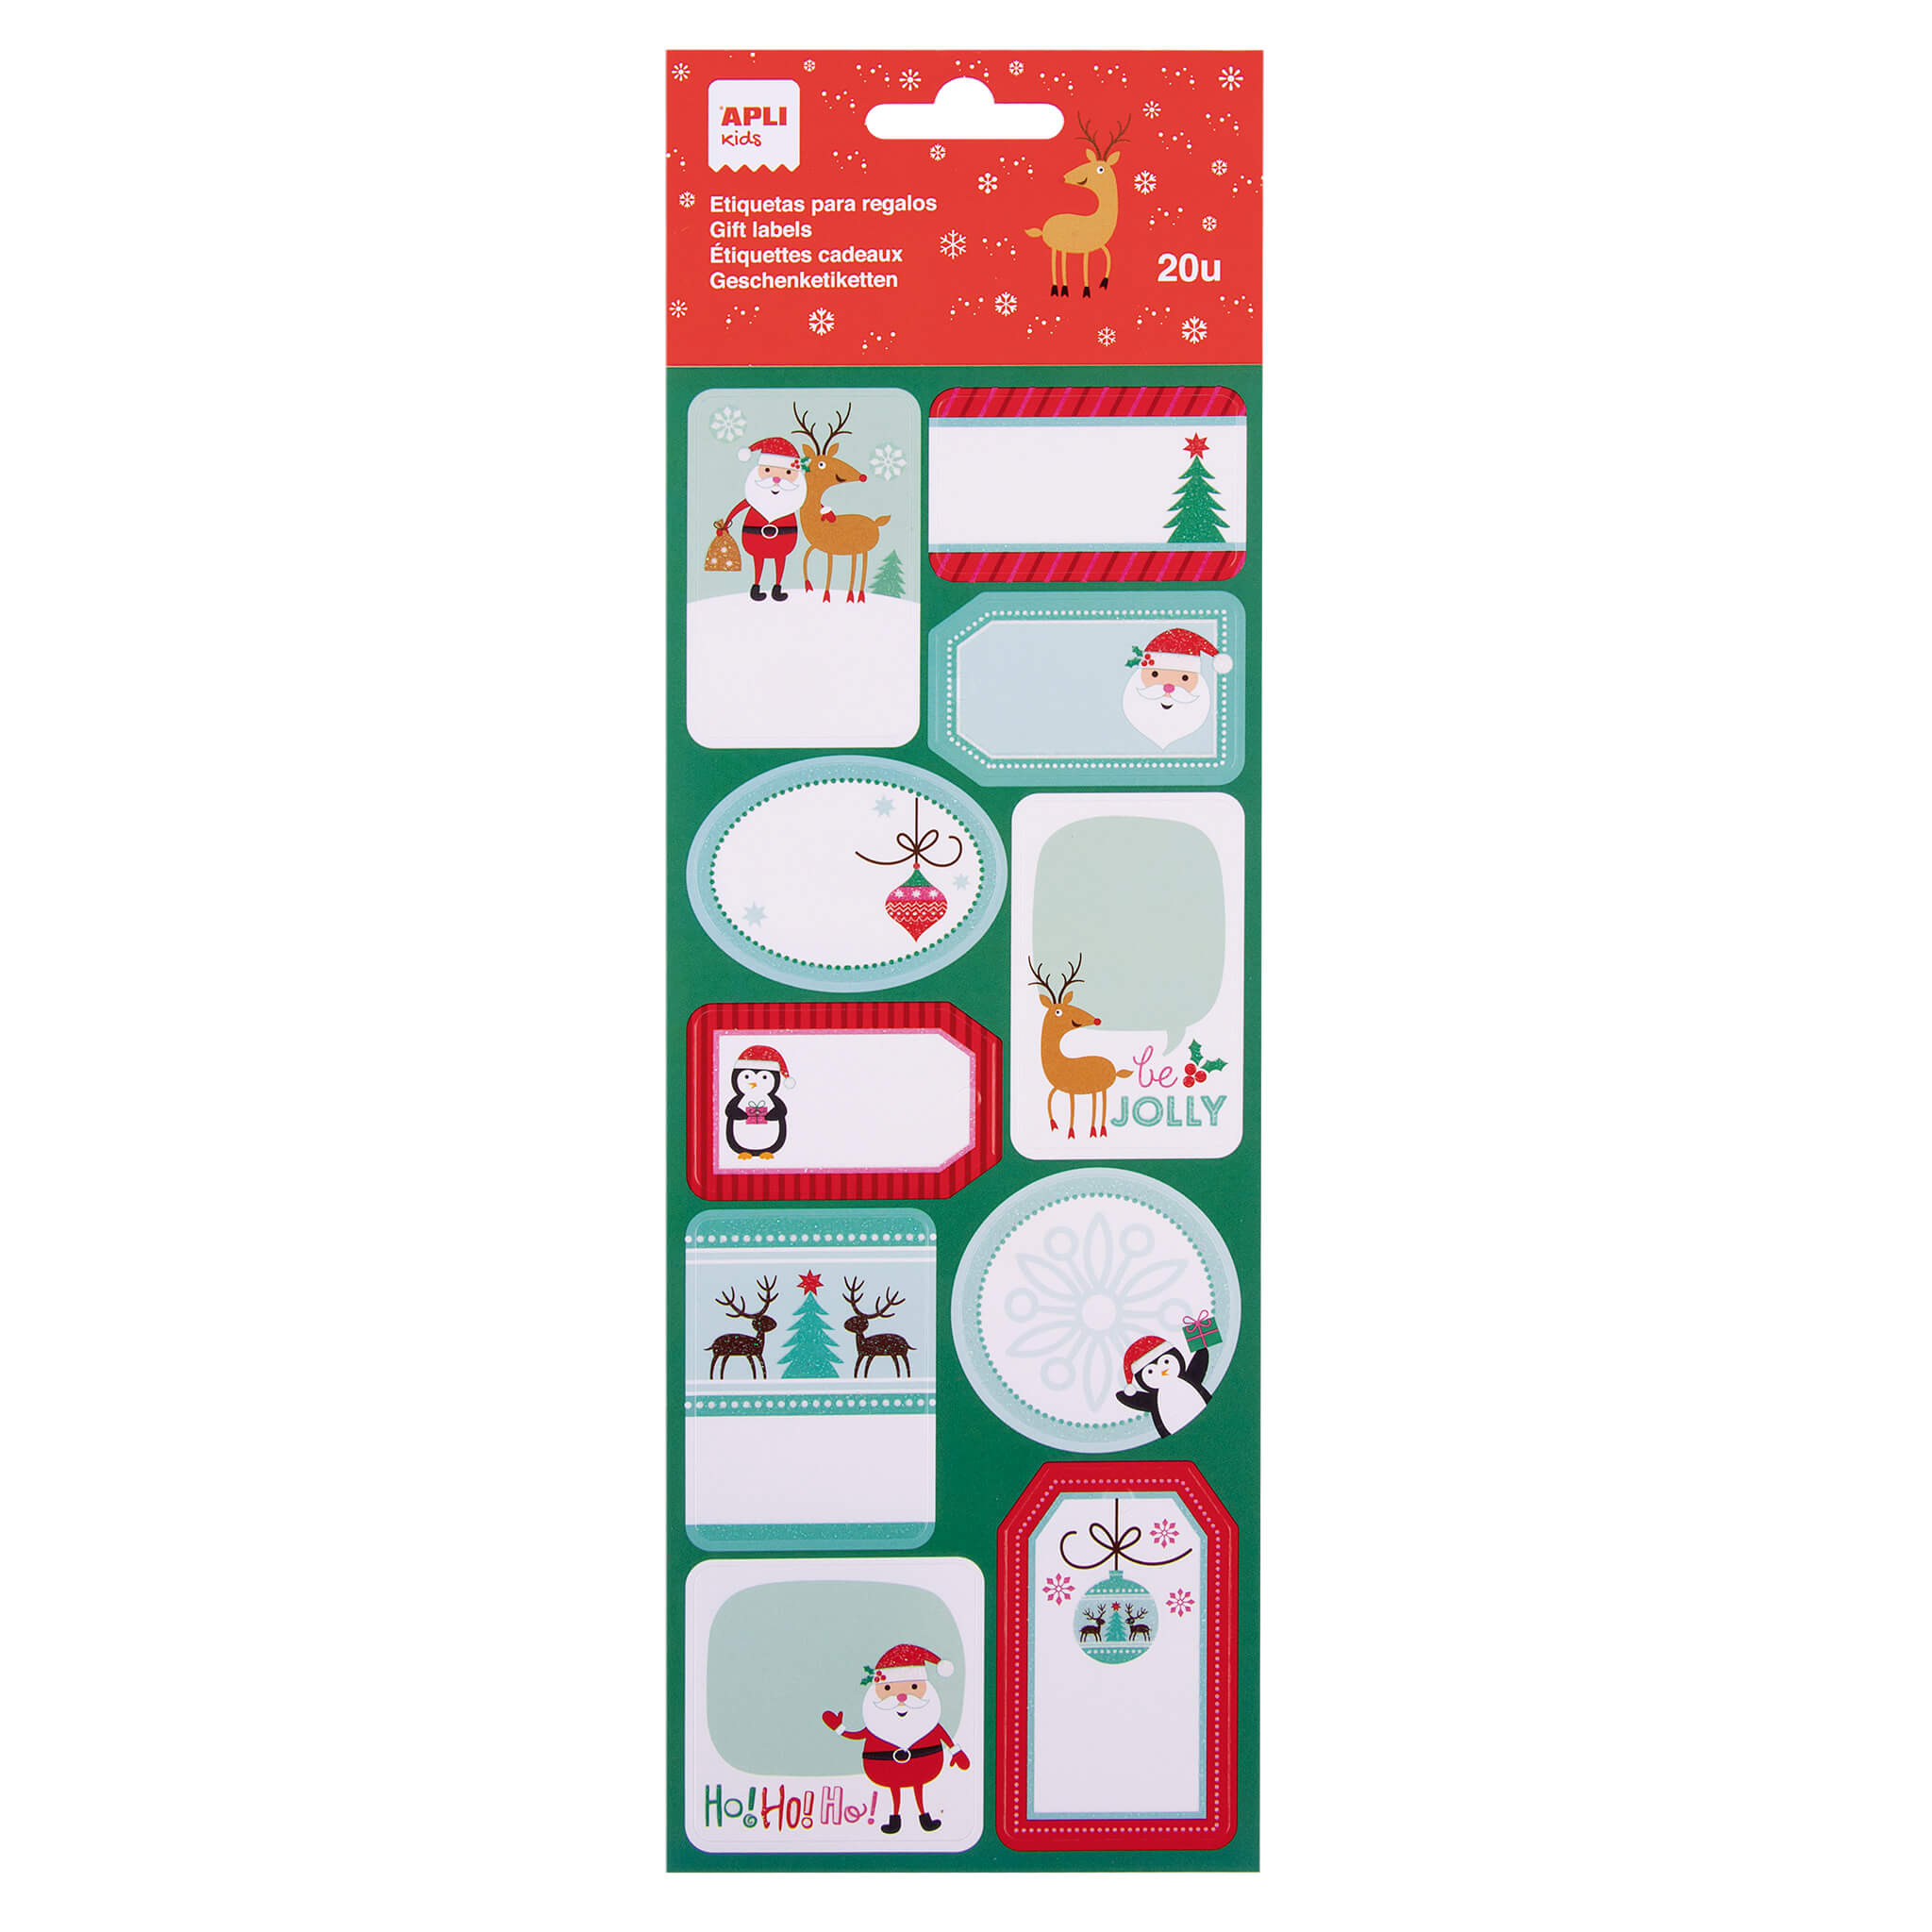 LOT de 5 Étiquettes adhésives sur le thème de Noël Apli - 20 étiquettes par sachet - 2 feuilles d'étiquettes - Adhésif permanent de haute qualité - Modèle renne